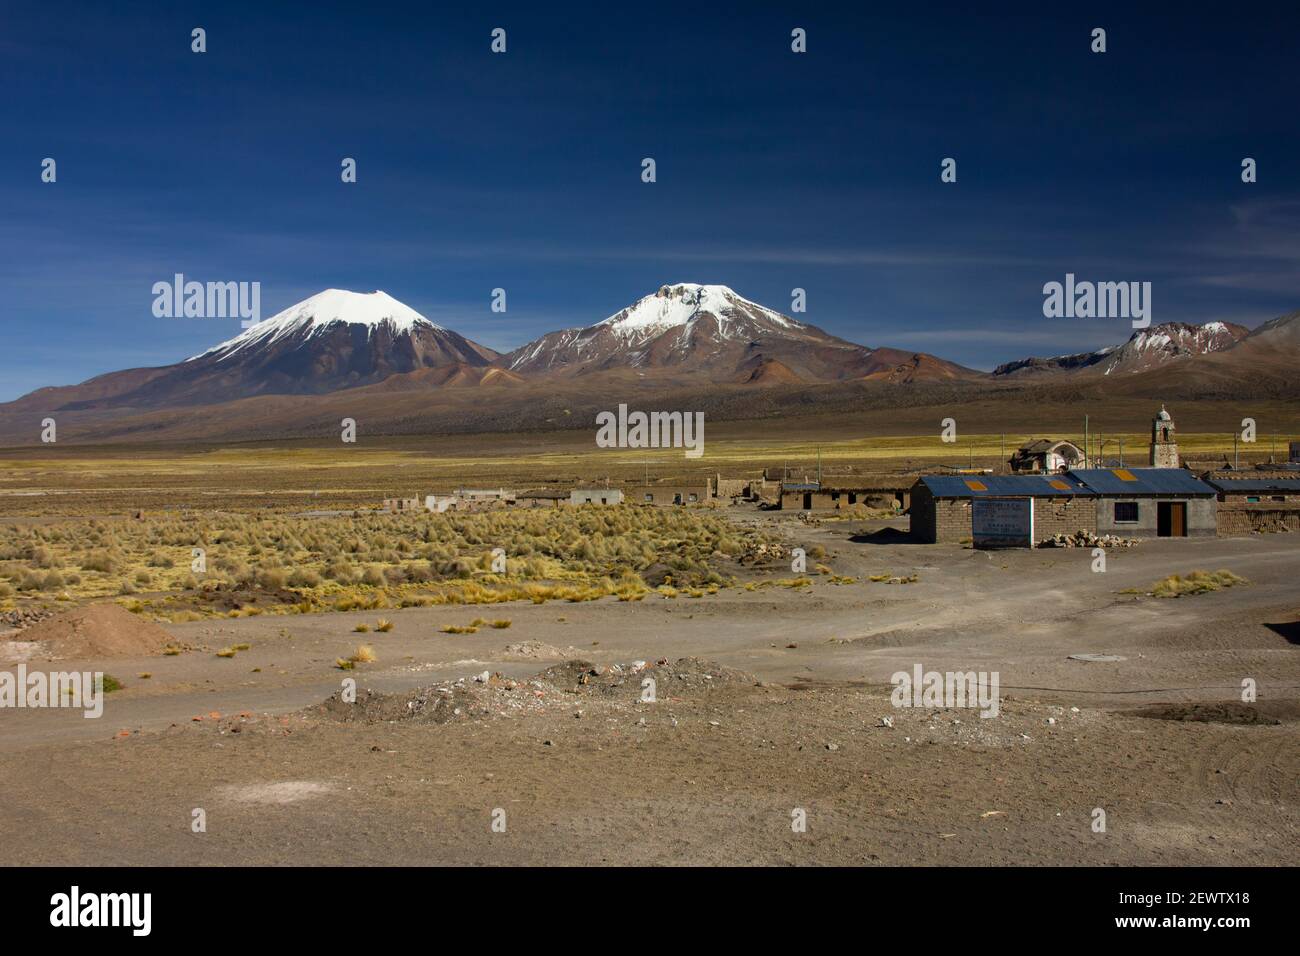 La petite ville andine de Sajama, avec le volcan Parinacota en arrière-plan. Altiplano bolivien, Amérique du Sud Banque D'Images